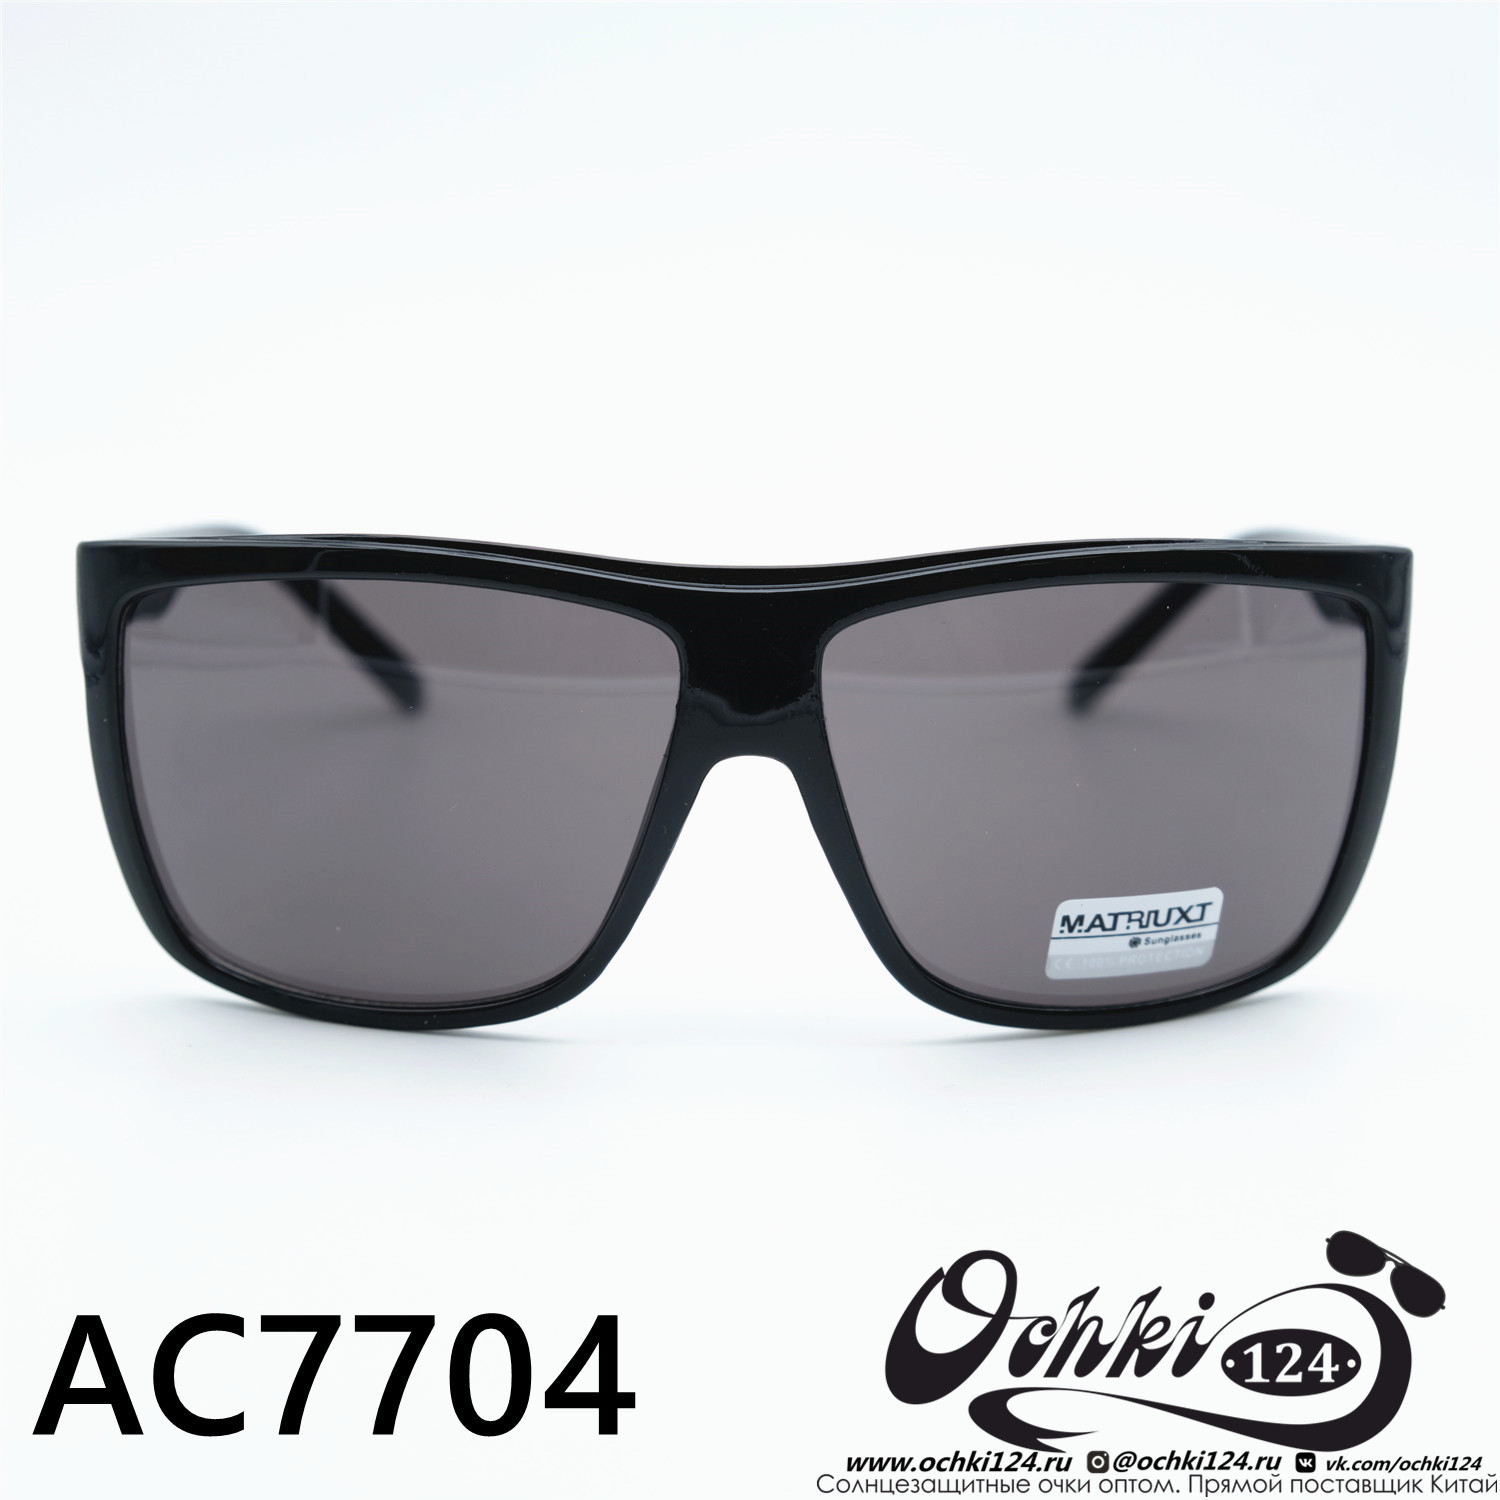  Солнцезащитные очки картинка 2023 Мужские Квадратные MATRIUXT AC7704-C1 